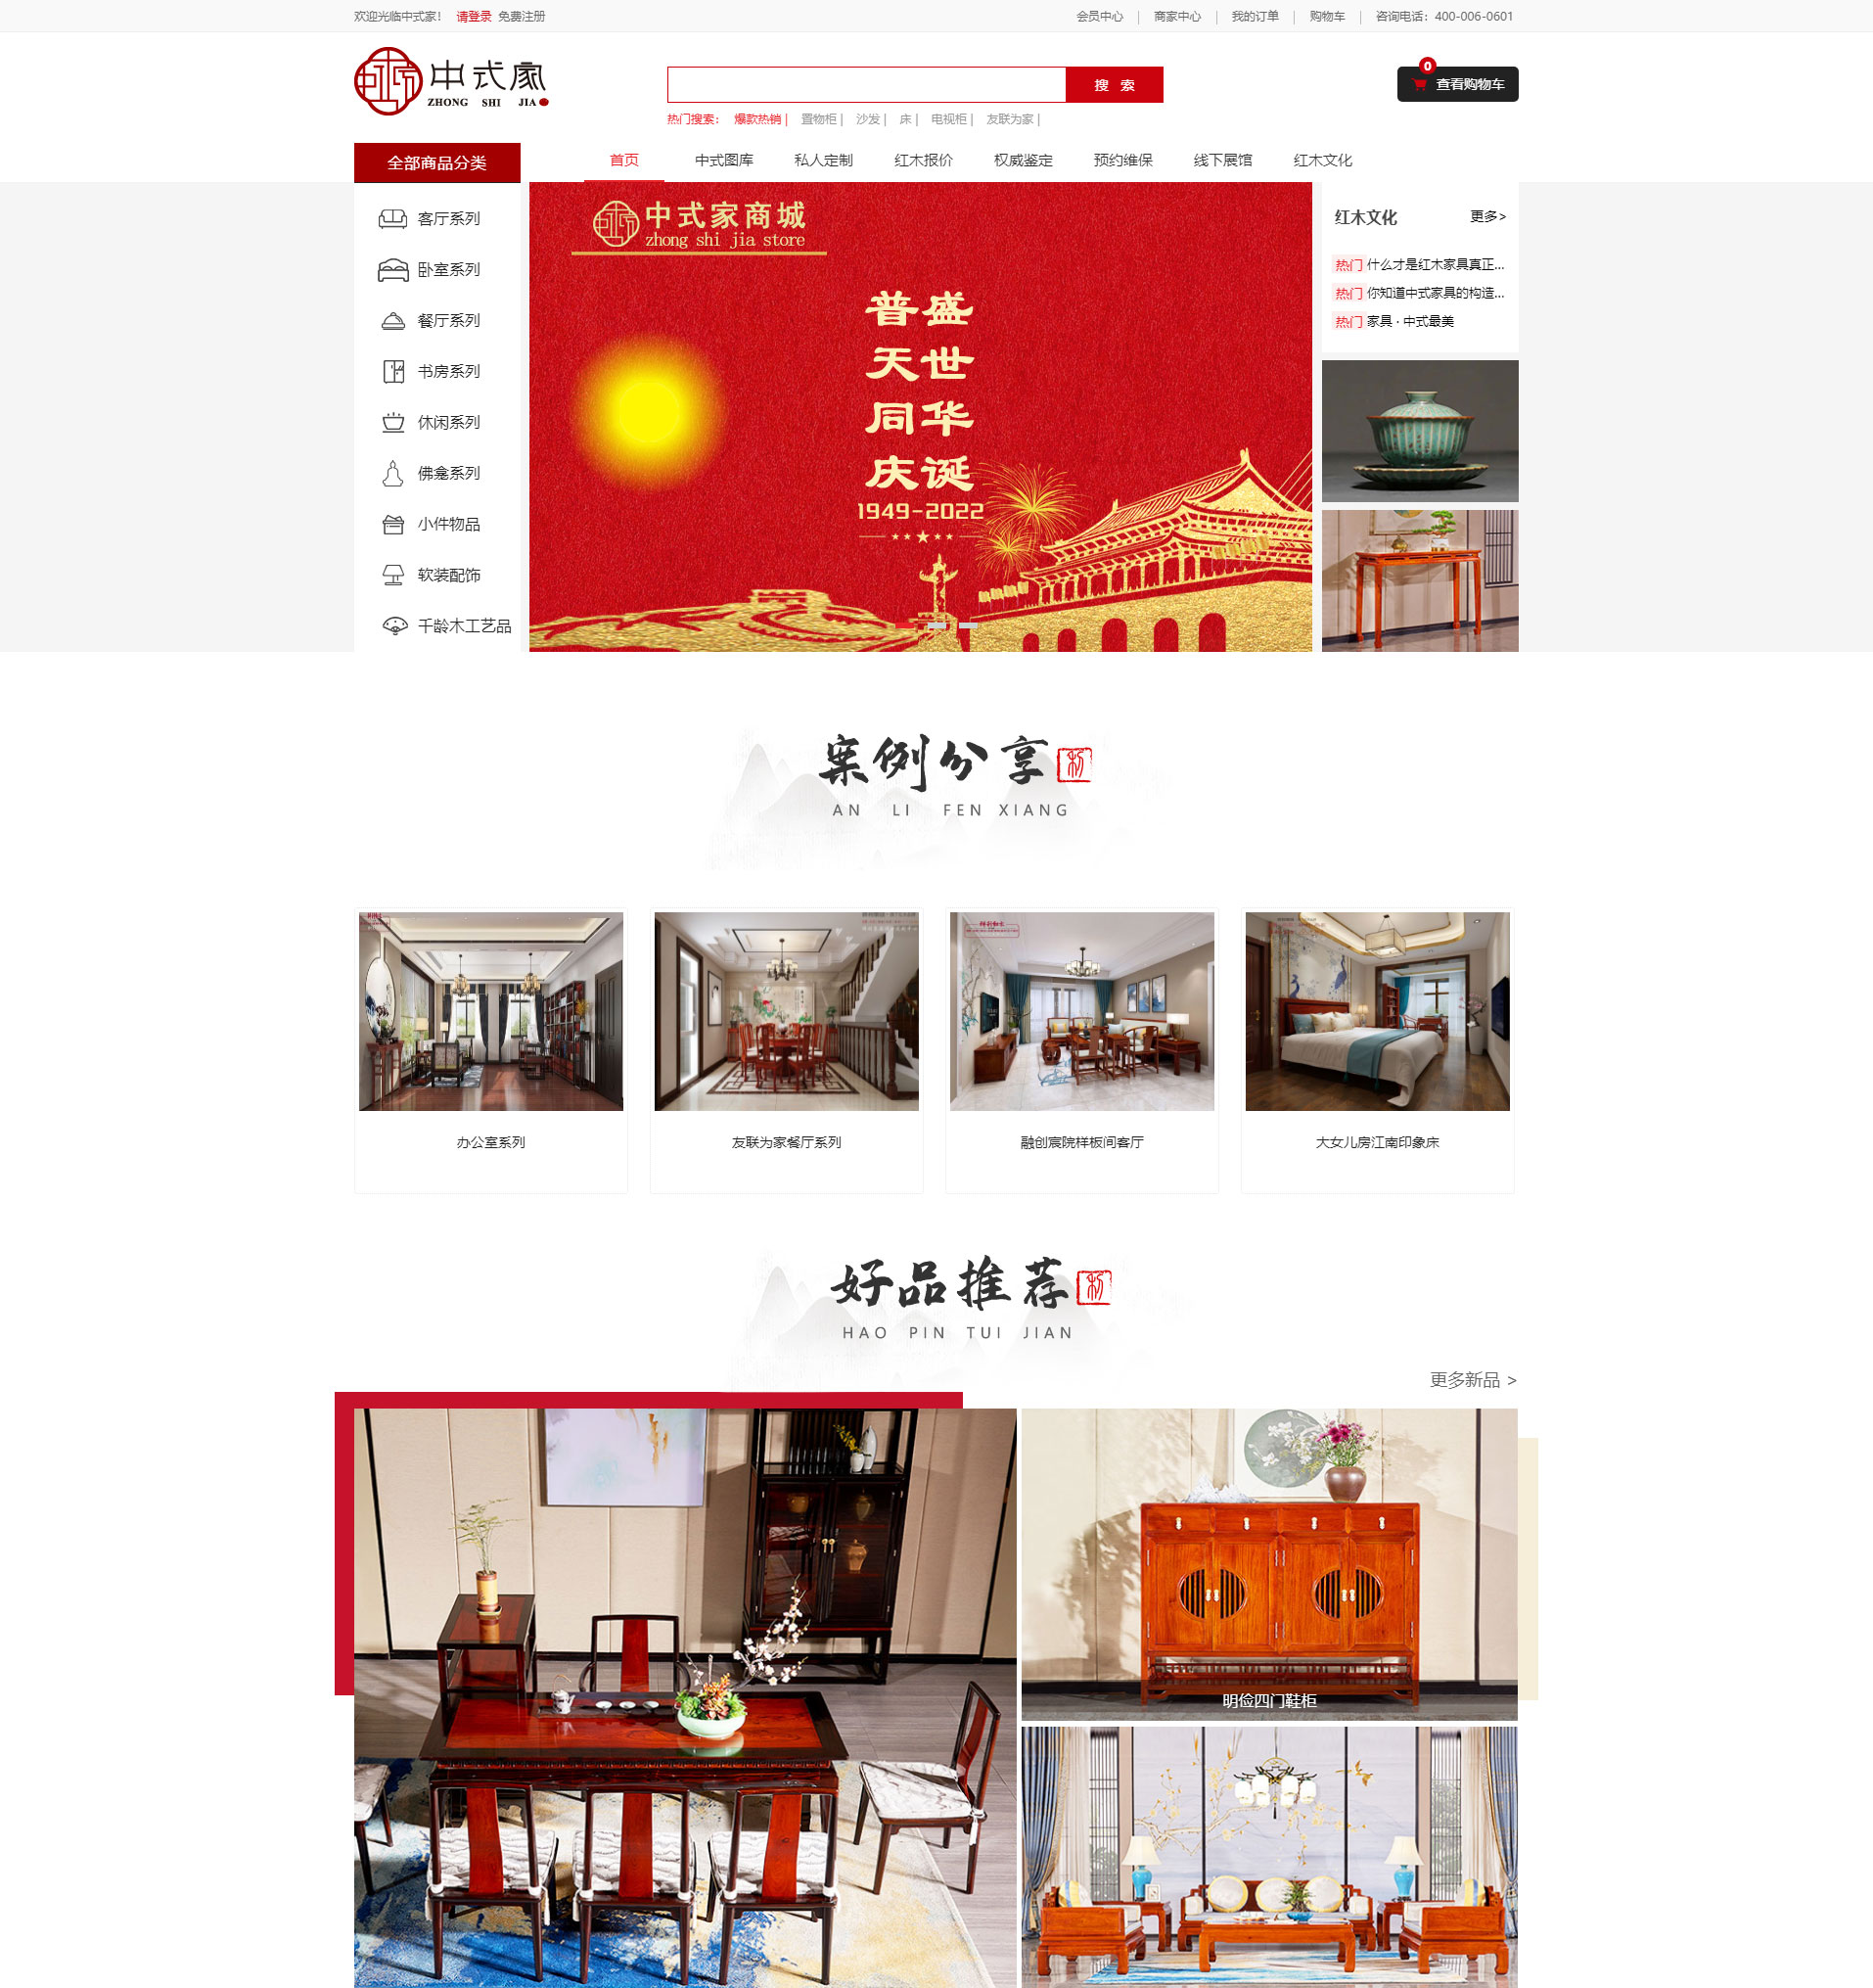 深圳市中式家网络科技有限公司